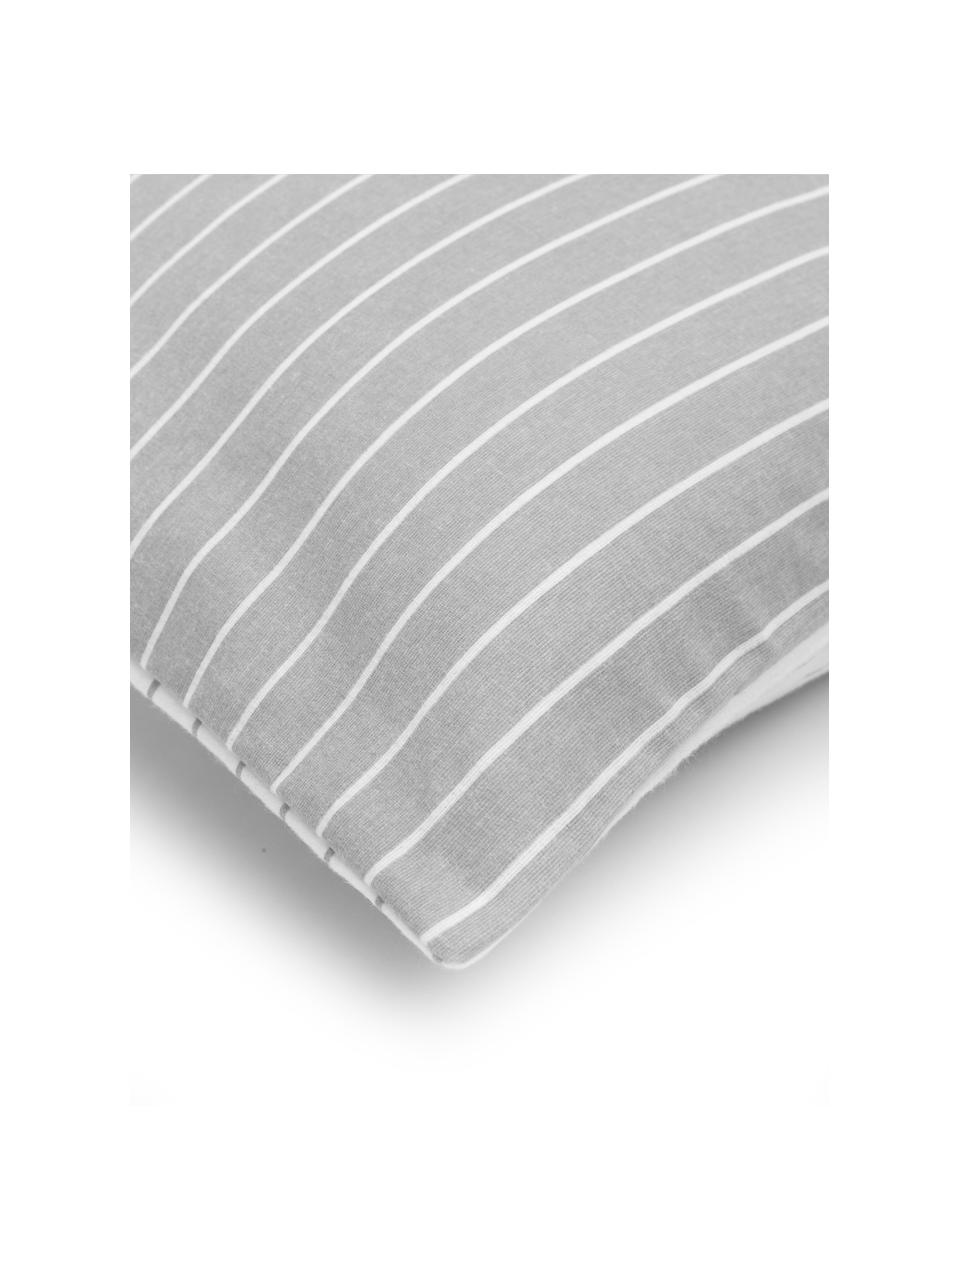 Gestreifte Flanell-Wendekissenbezüge Talin in Grau, 2 Stück, Webart: Flanell Flanell ist ein k, Grau, Weiß, B 40 x L 80 cm